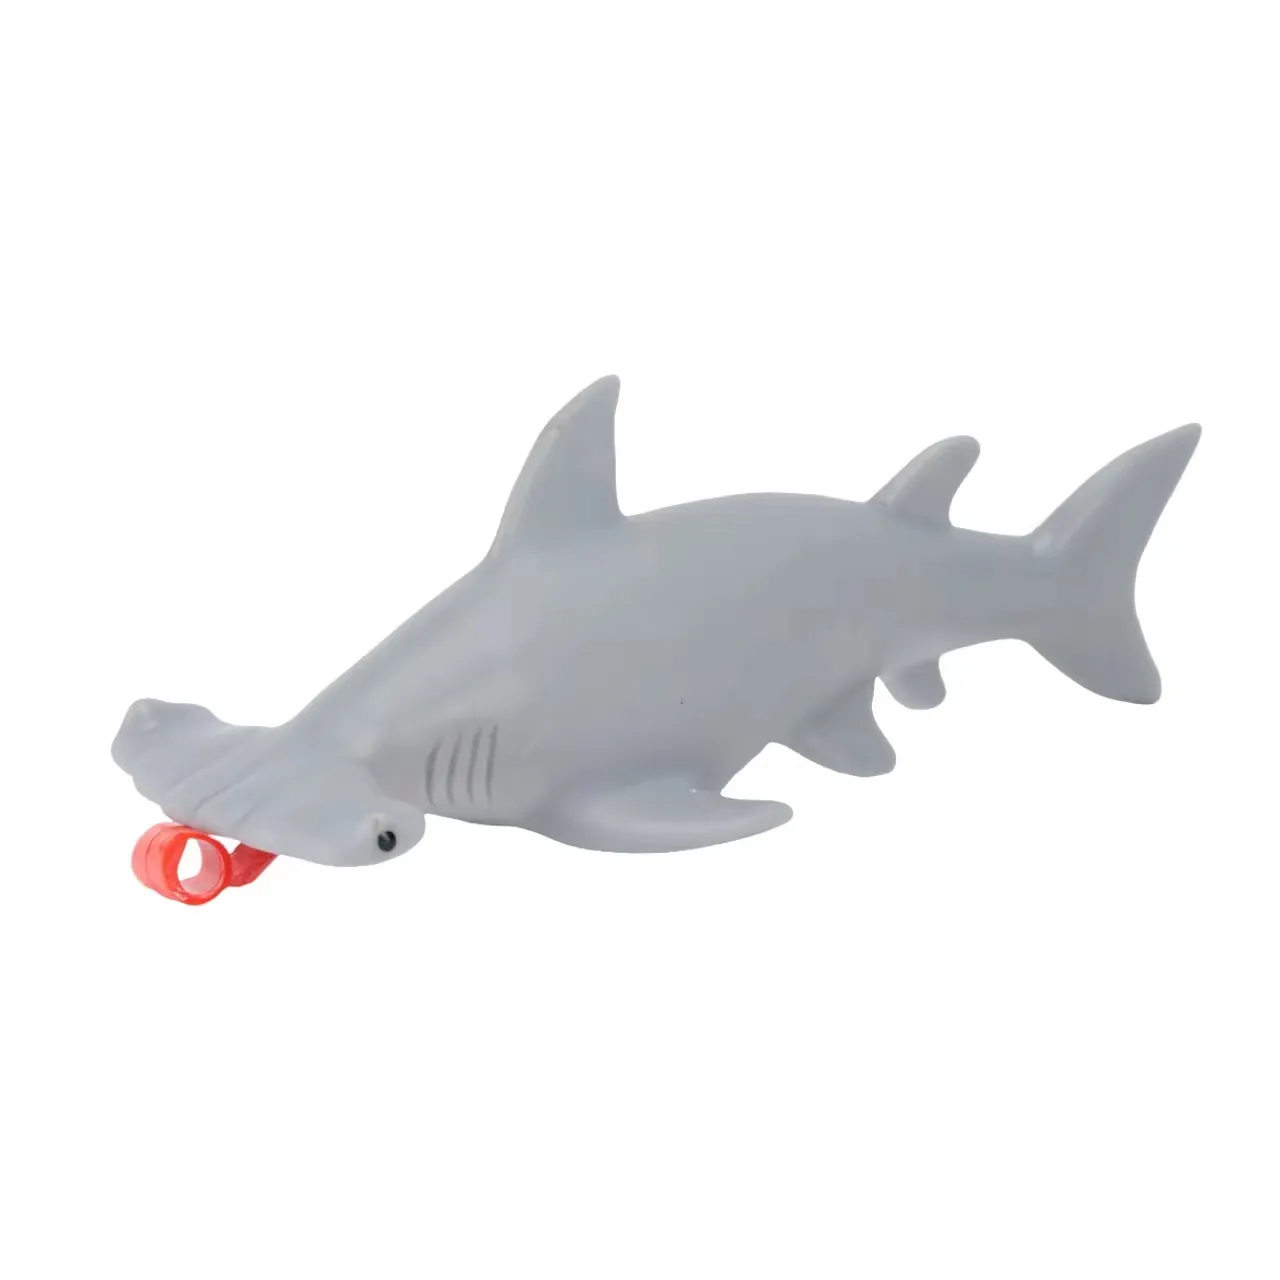 최신 핫 세일 귀상어 상어 장난감 시뮬레이션 바다 동물 프레스 혀 아웃 스트레스 해소 장난감 선물